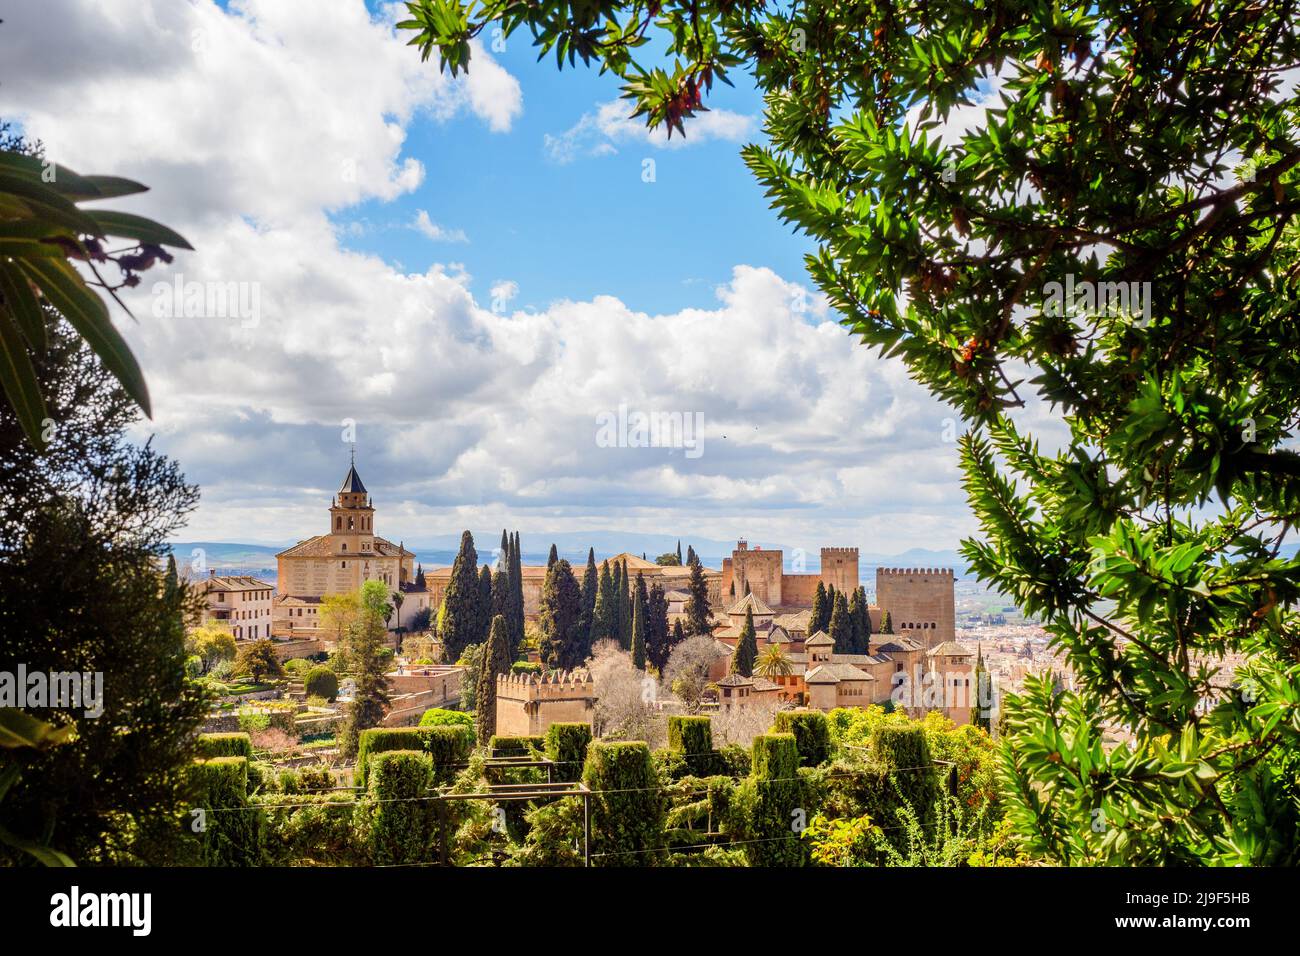 Vista sul complesso dell'Alhambra dai giardini del Generalife - Granada, Spagna Foto Stock